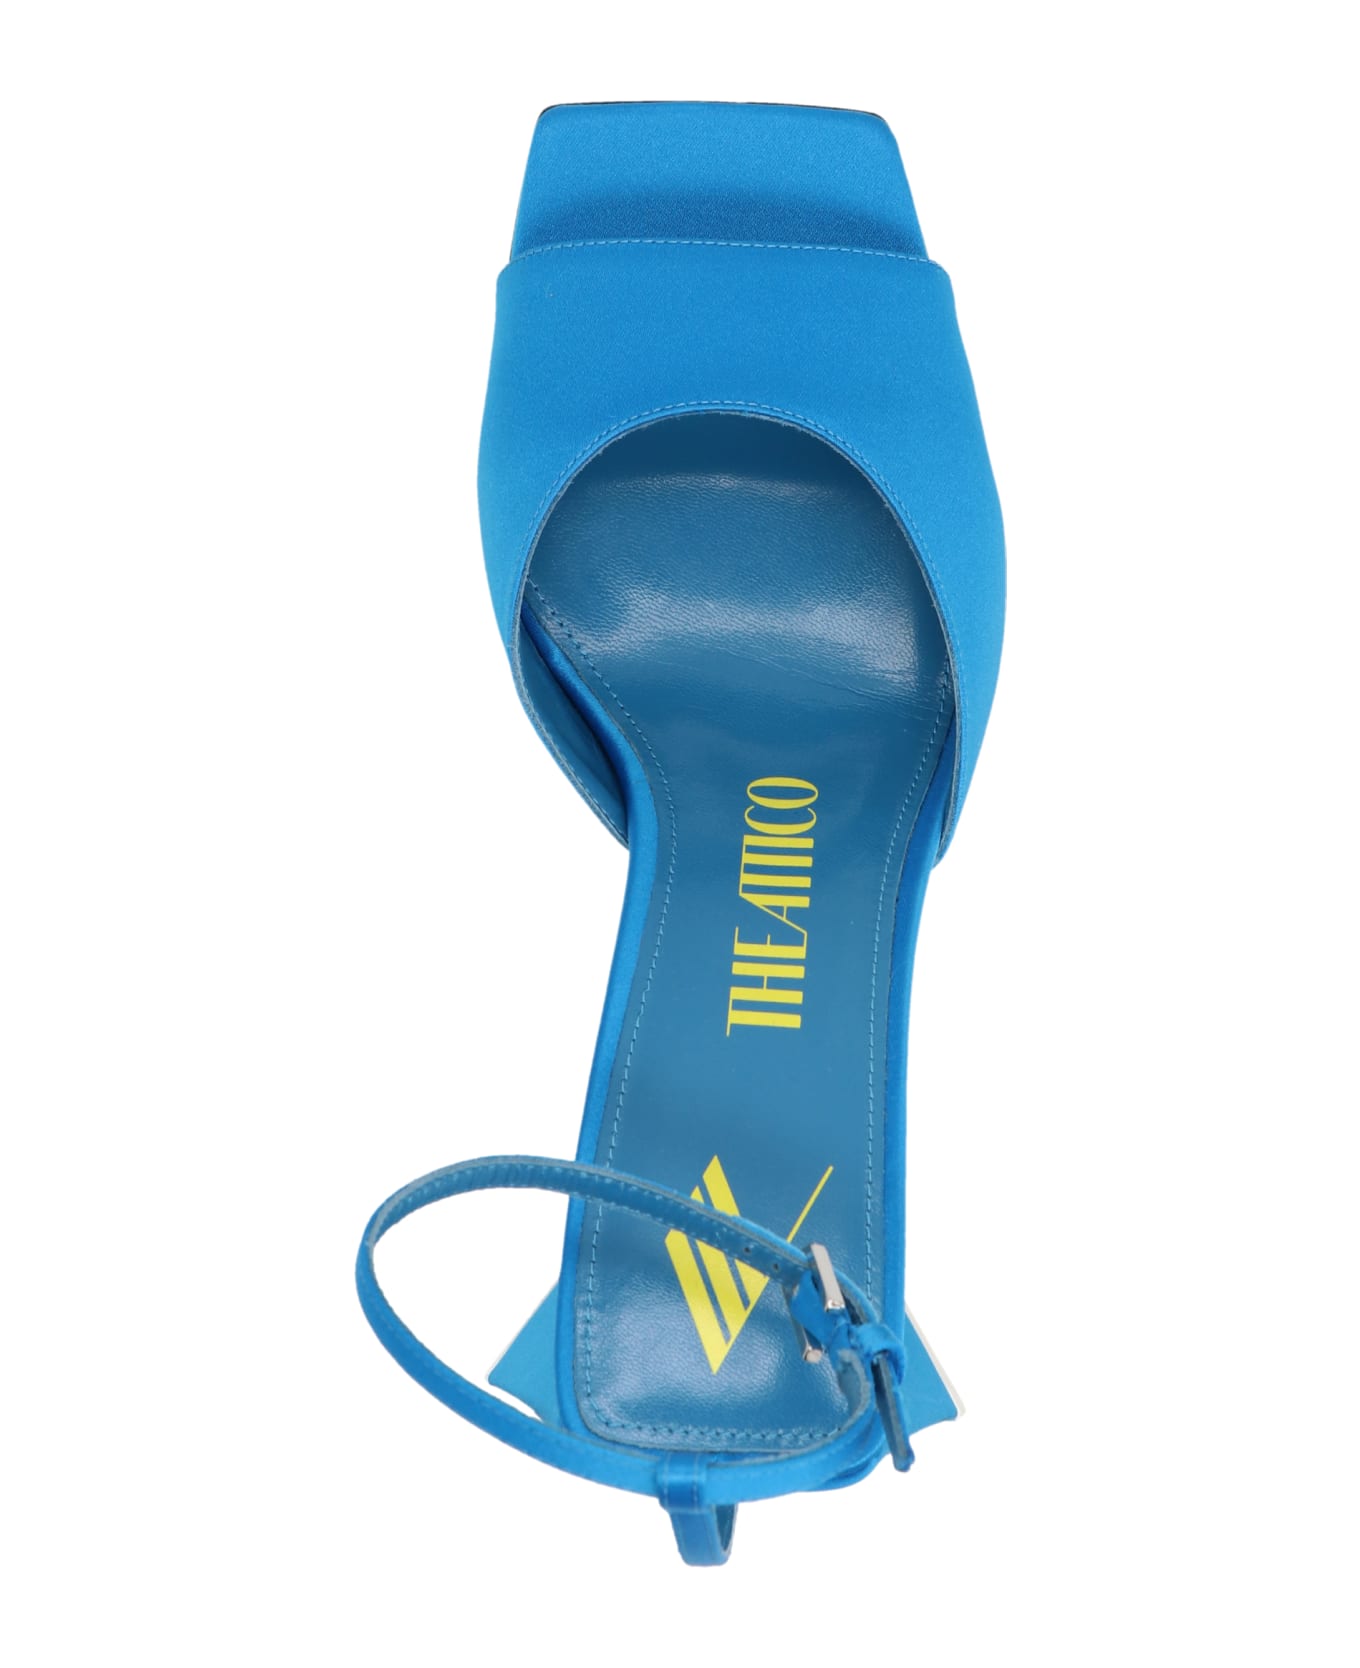 The Attico 'piper Sandals - Light Blue サンダル